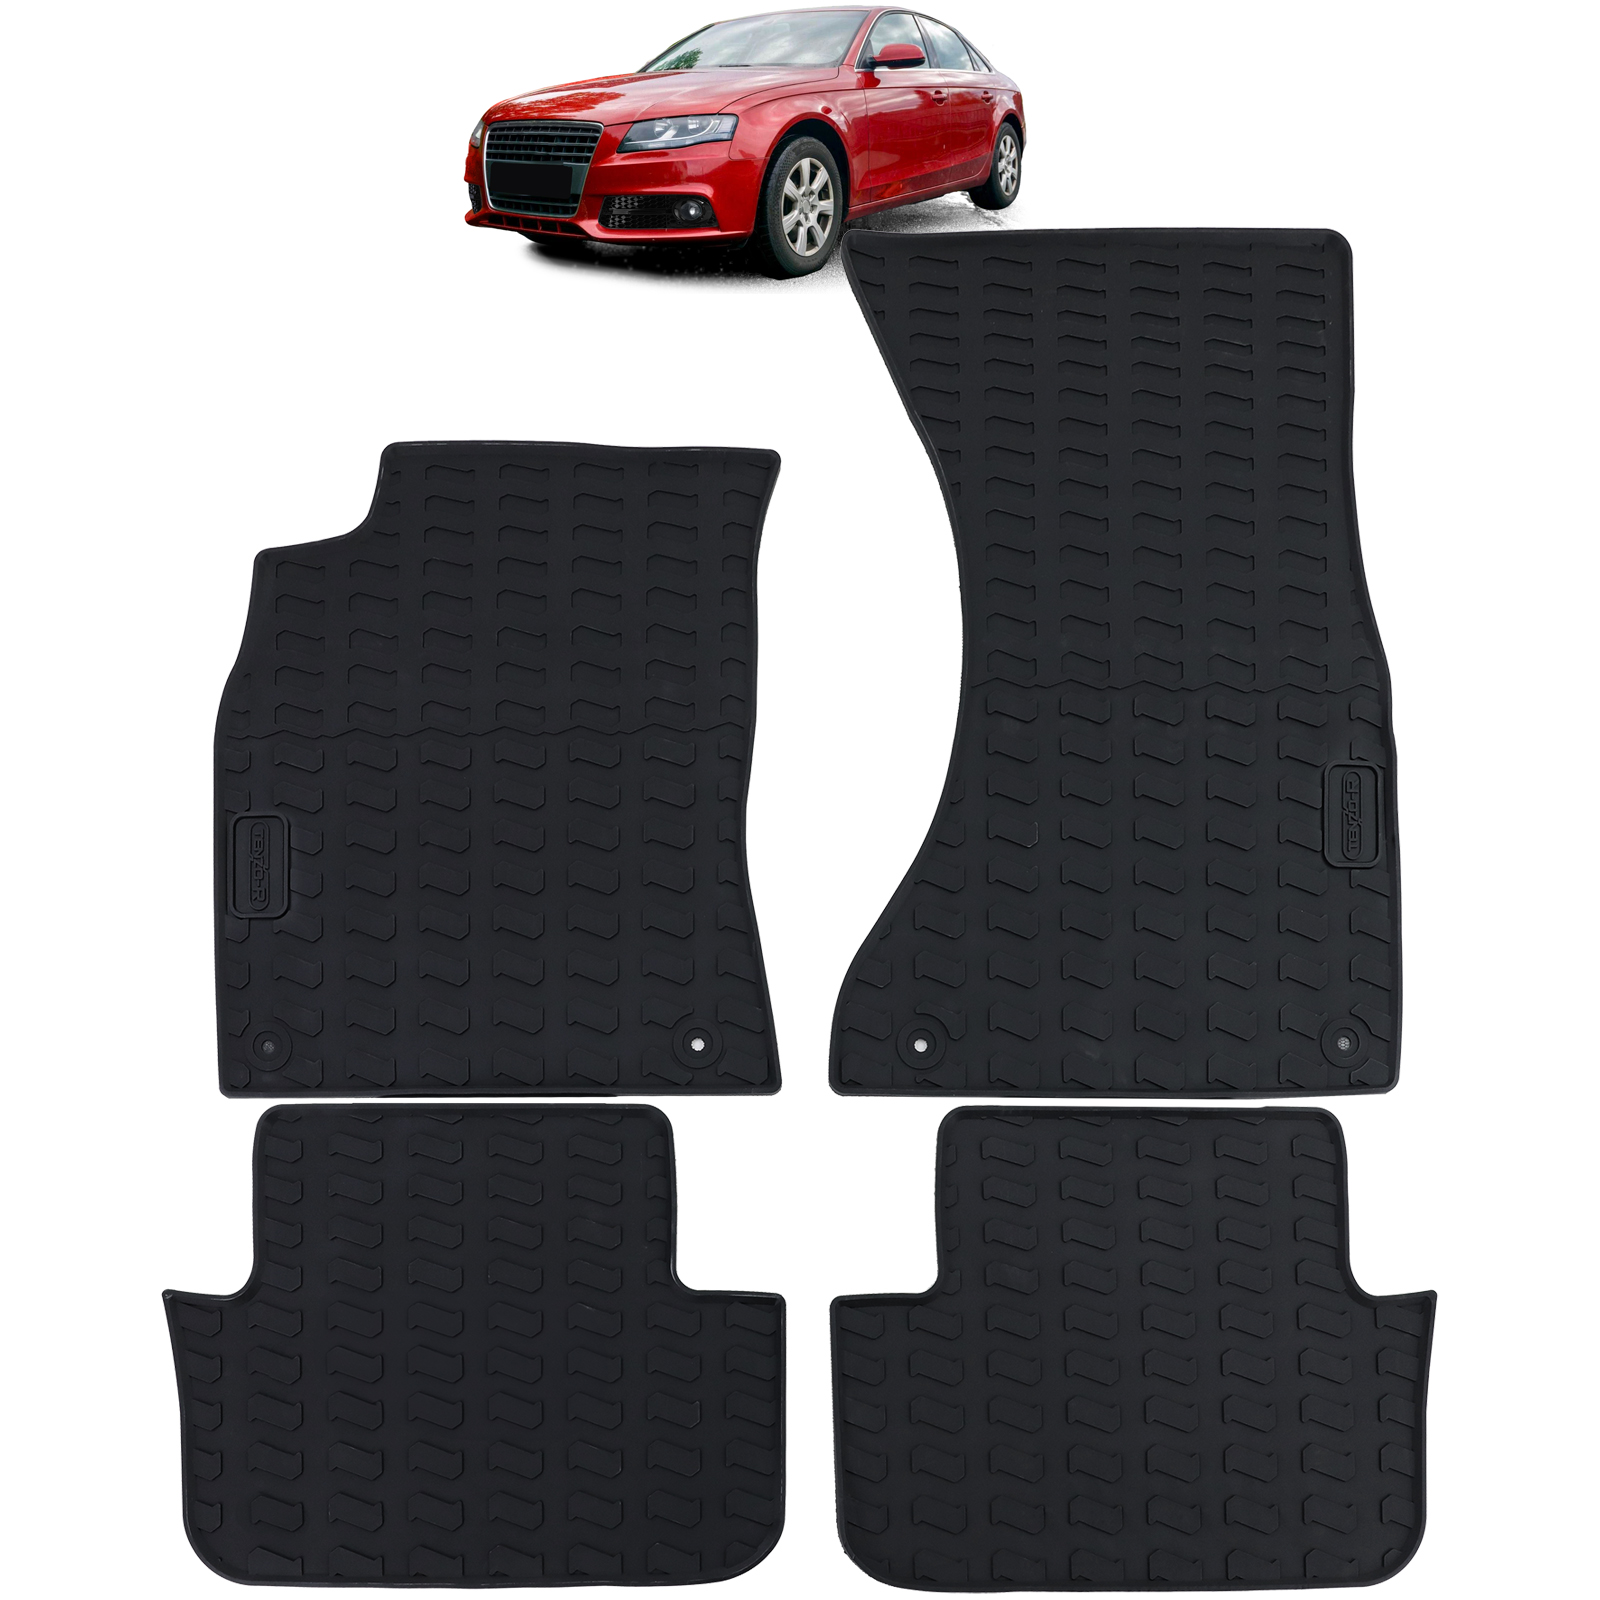 Auto Gummi Fußmatten Schwarz Premium Set für Audi A4 B8 Limousine